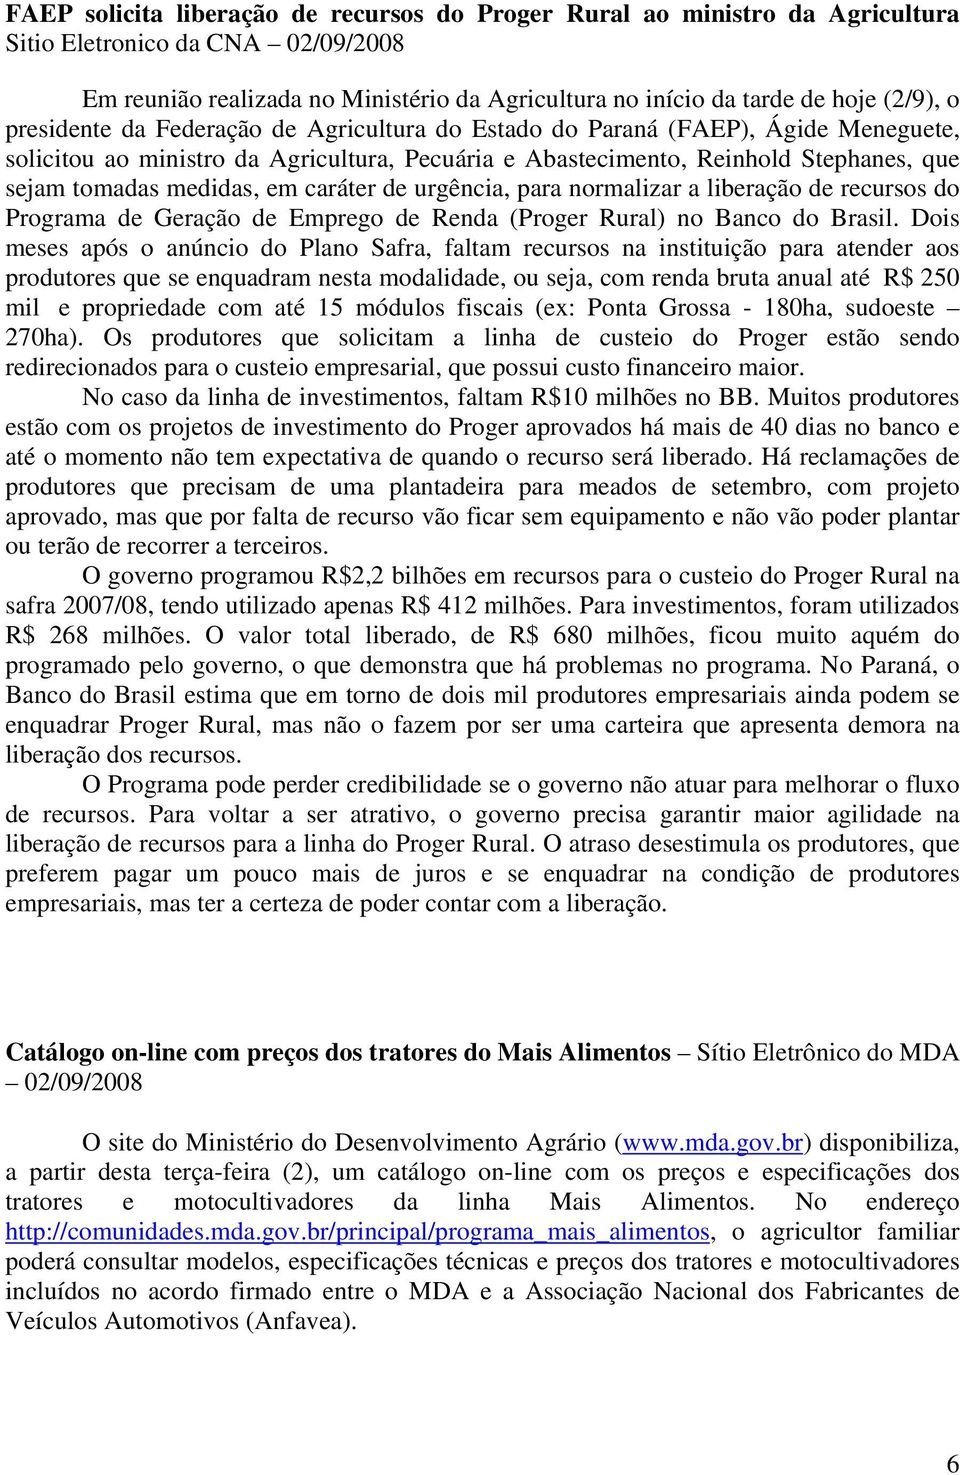 caráter de urgência, para normalizar a liberação de recursos do Programa de Geração de Emprego de Renda (Proger Rural) no Banco do Brasil.